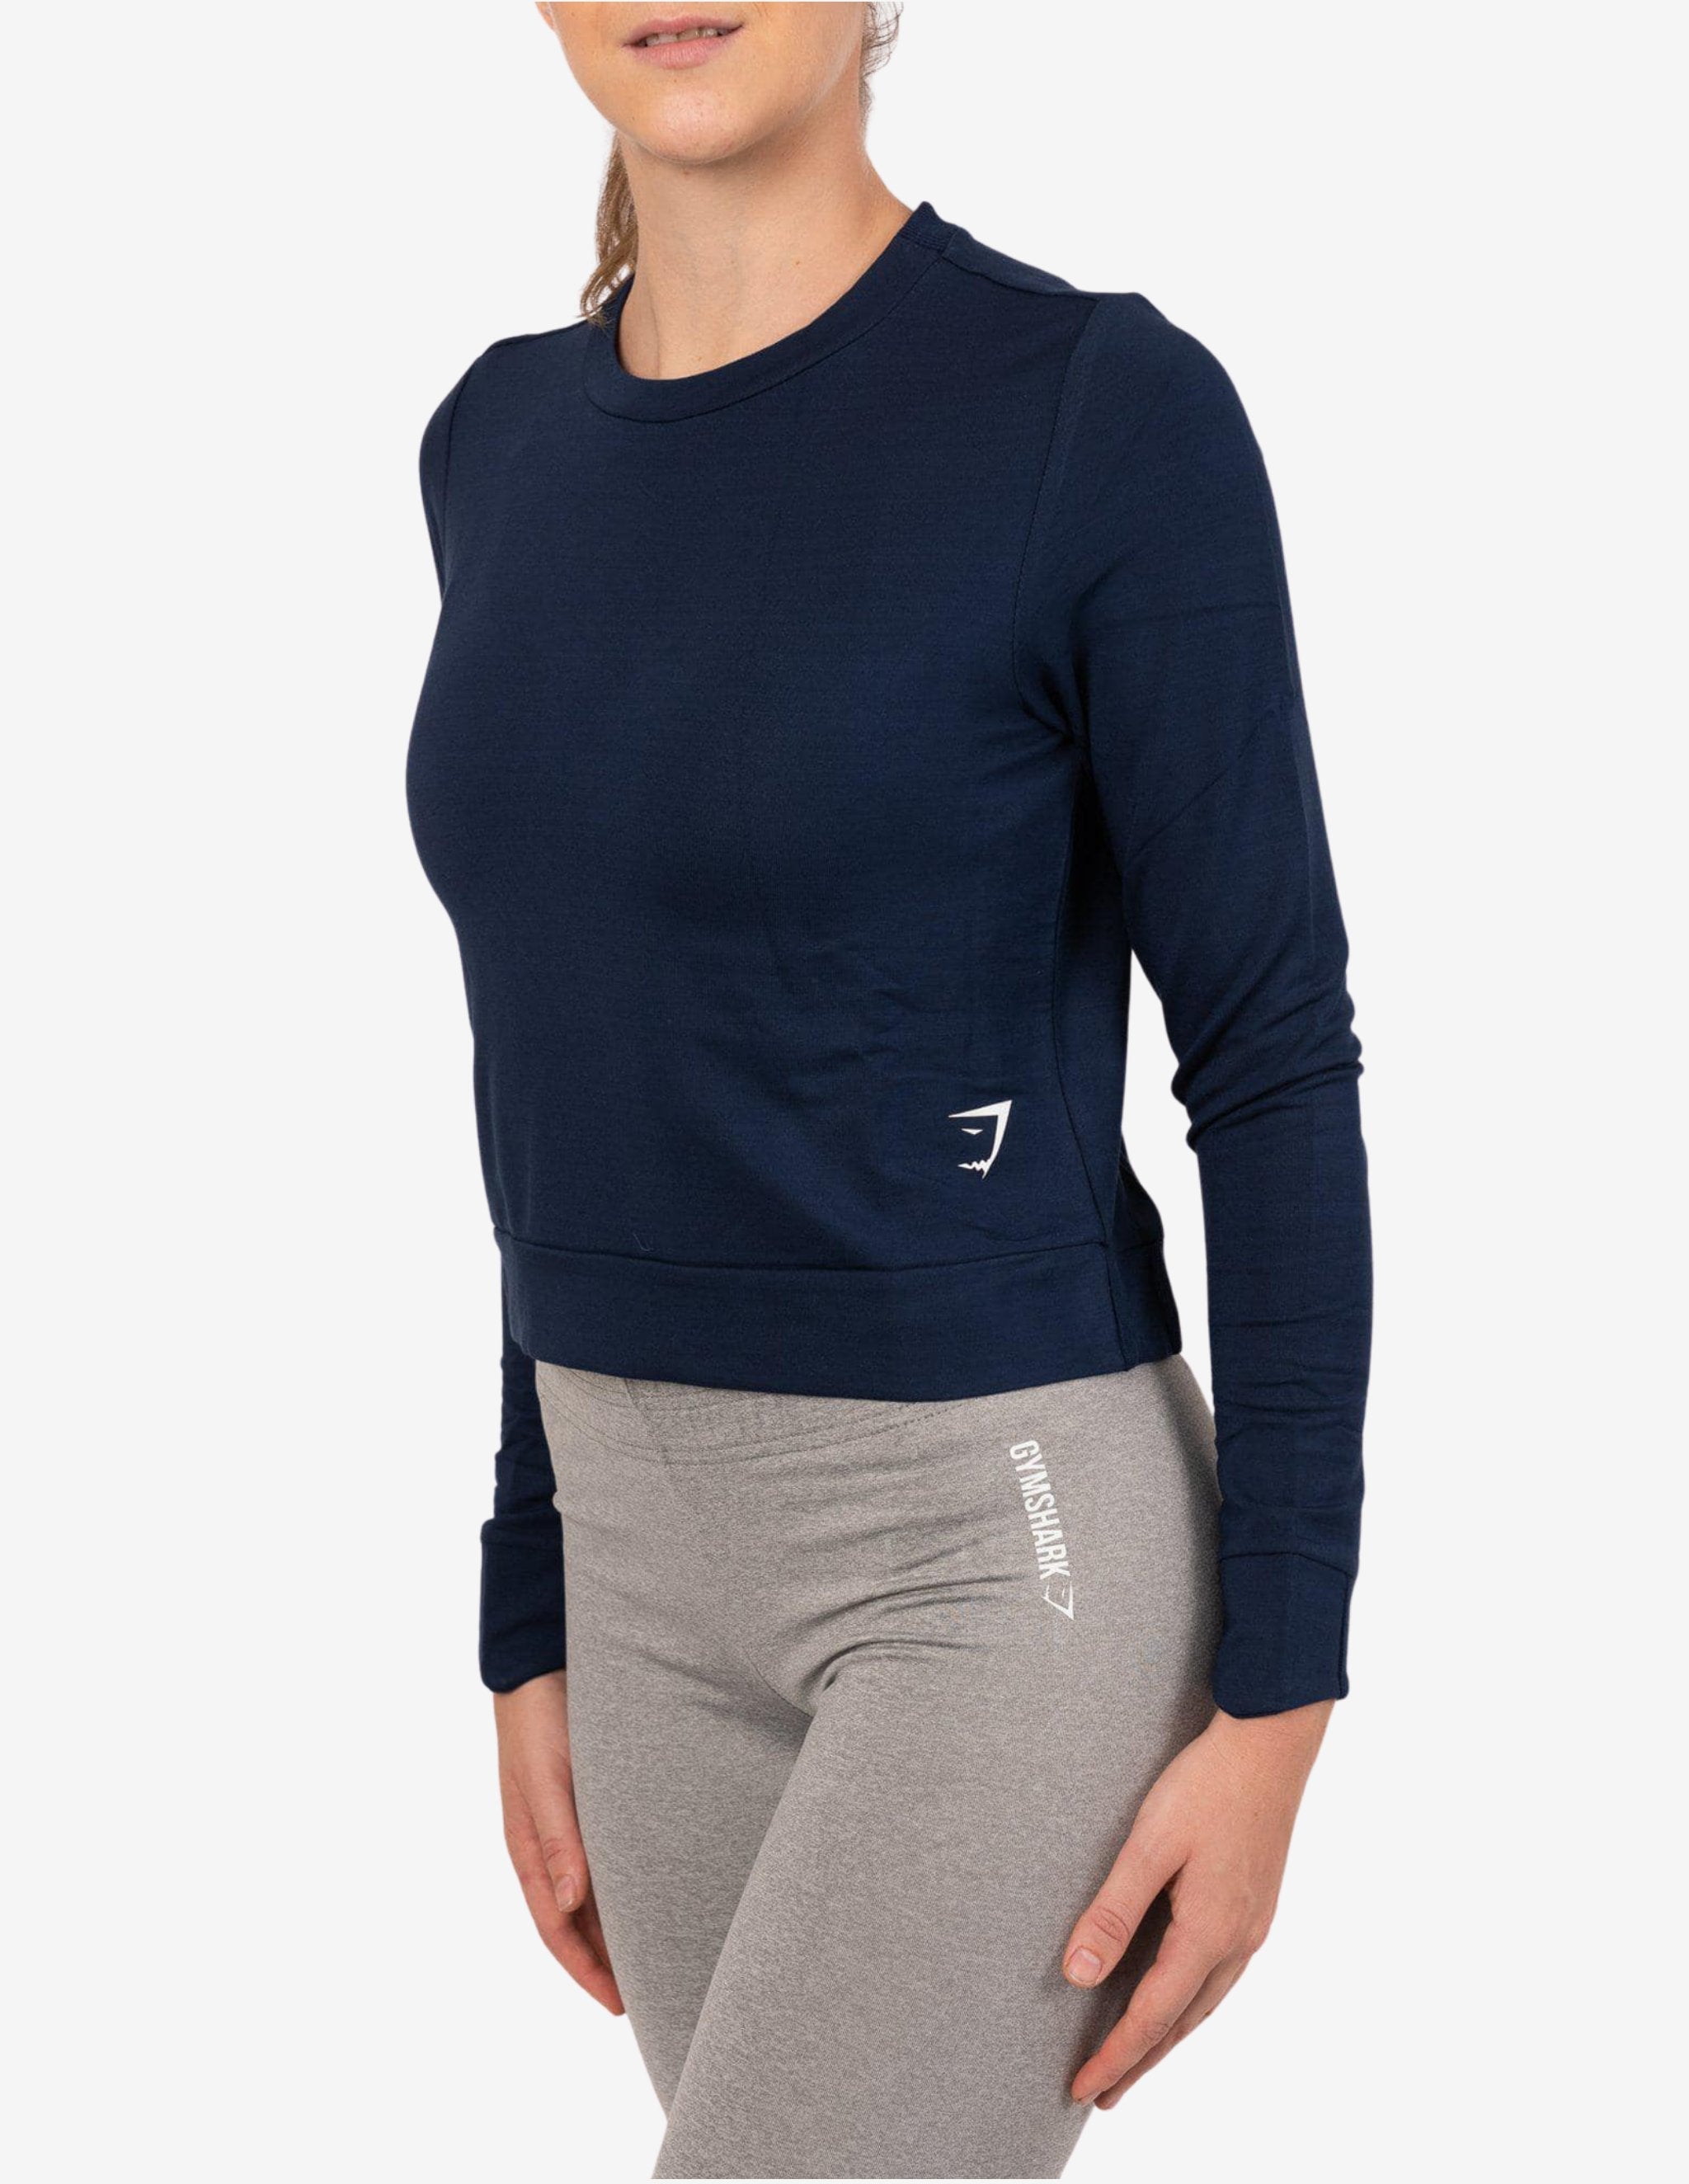 Essential Sweater Sapphire Blue-Hoodie Woman-Gymshark-Guru Muscle